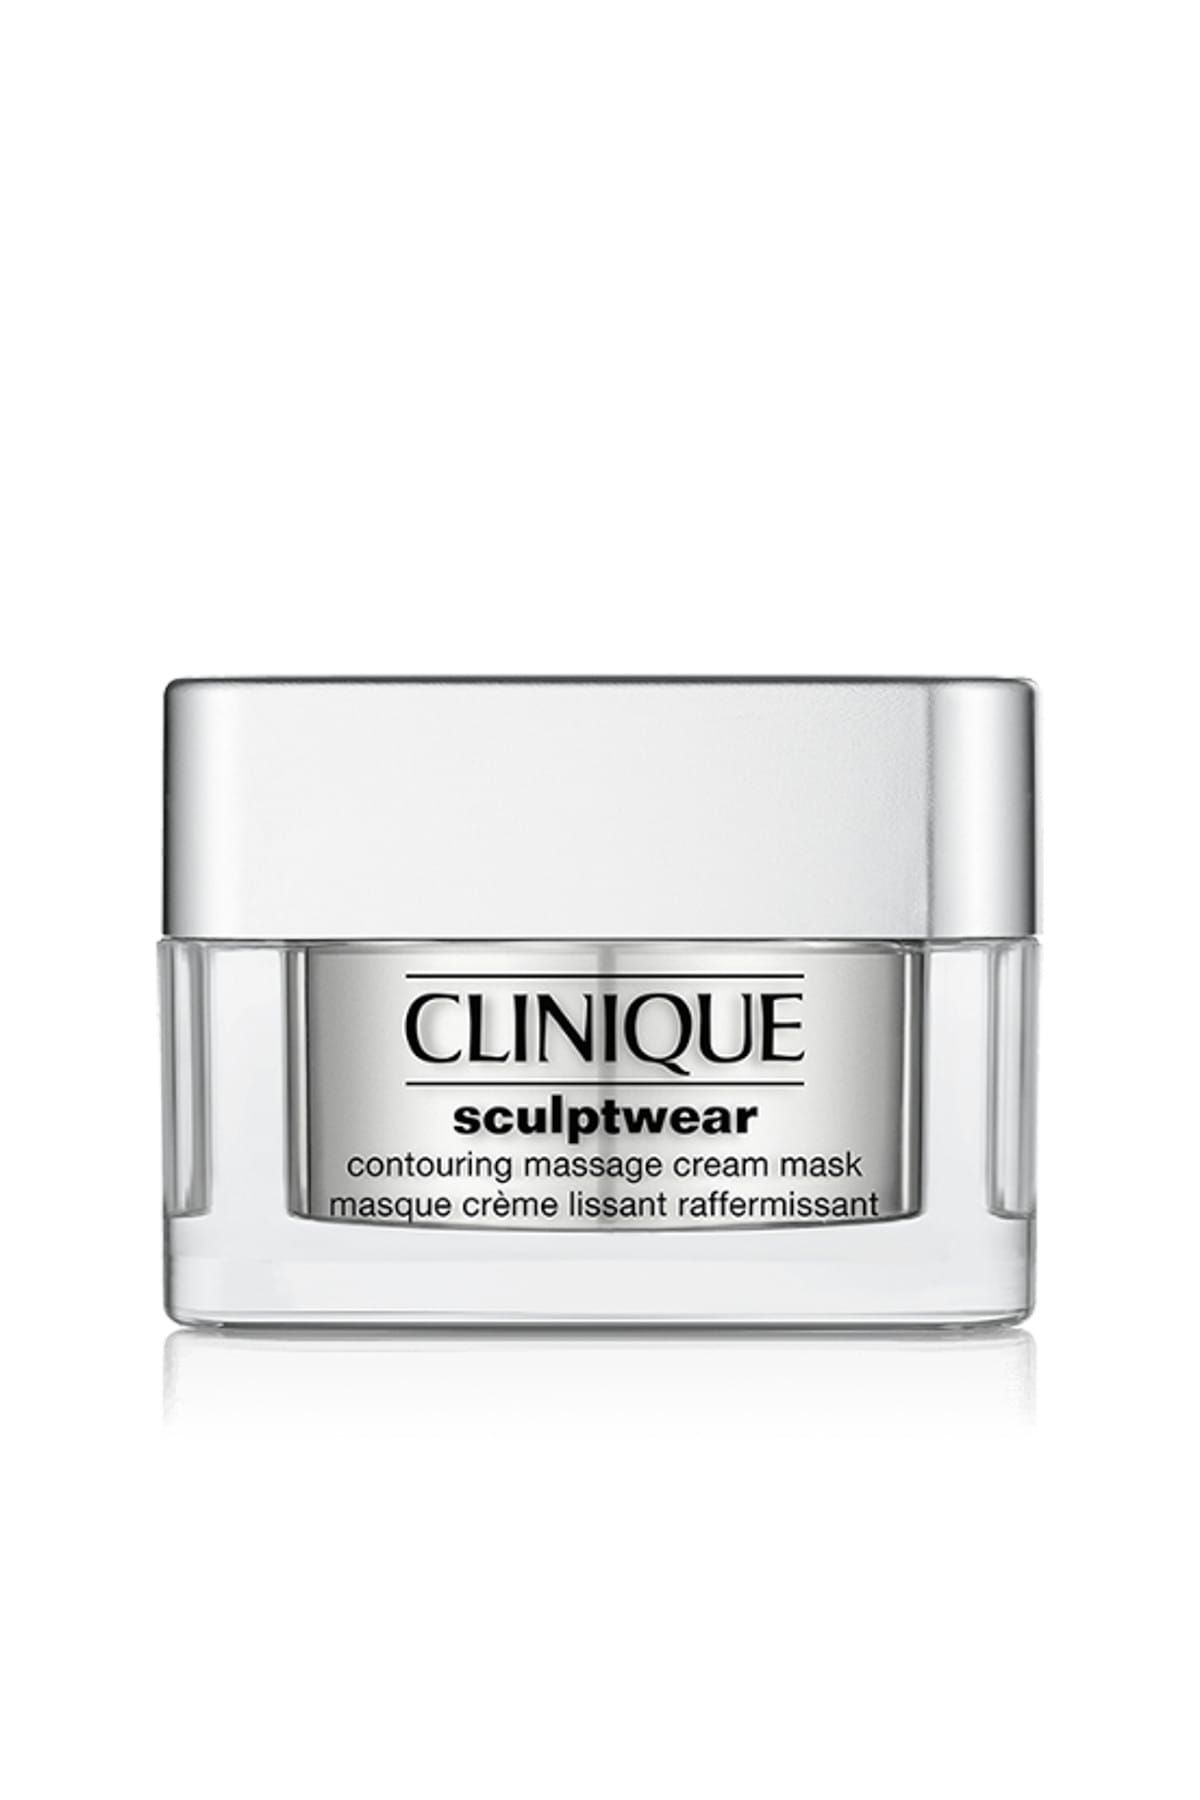 Clinique Sıkılaştırıcı ve Şekillendirici Maske - Sculptwear Contouring Massage Cream Mask 50 ml 020714742072